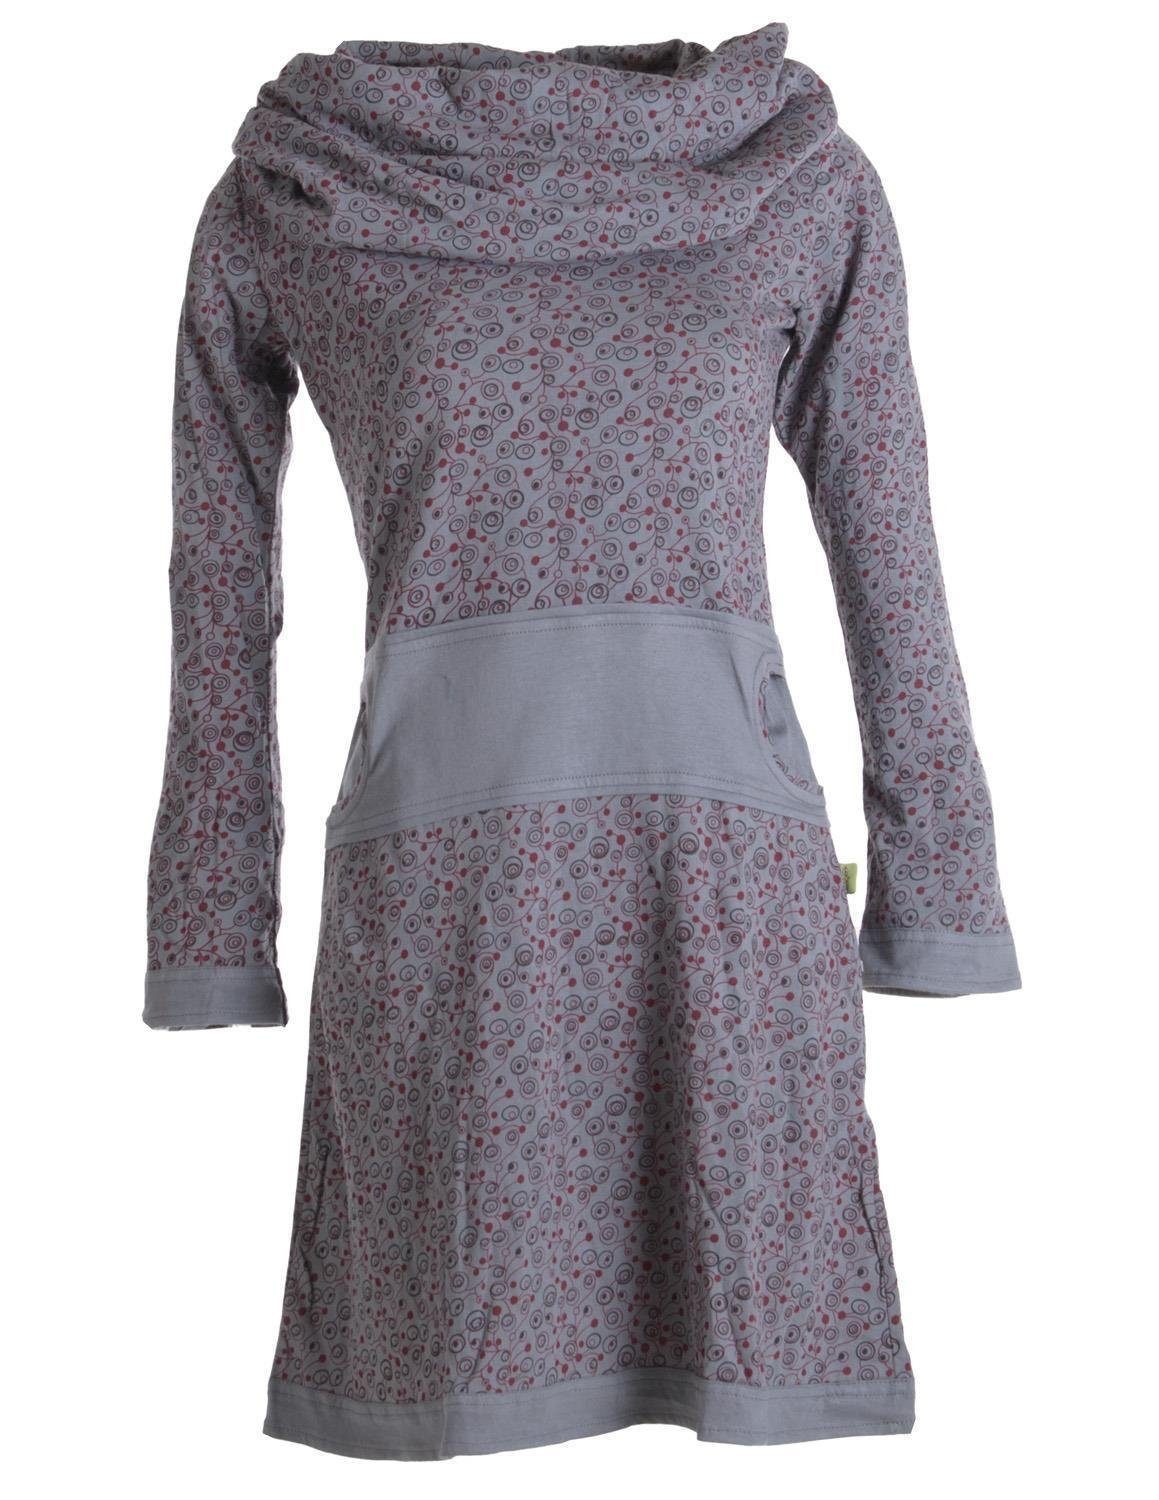 Vishes Jerseykleid Bedrucktes Kleid aus Baumwolle mit Schalkragen Ethno, Goa, Boho, Hippie Style grau